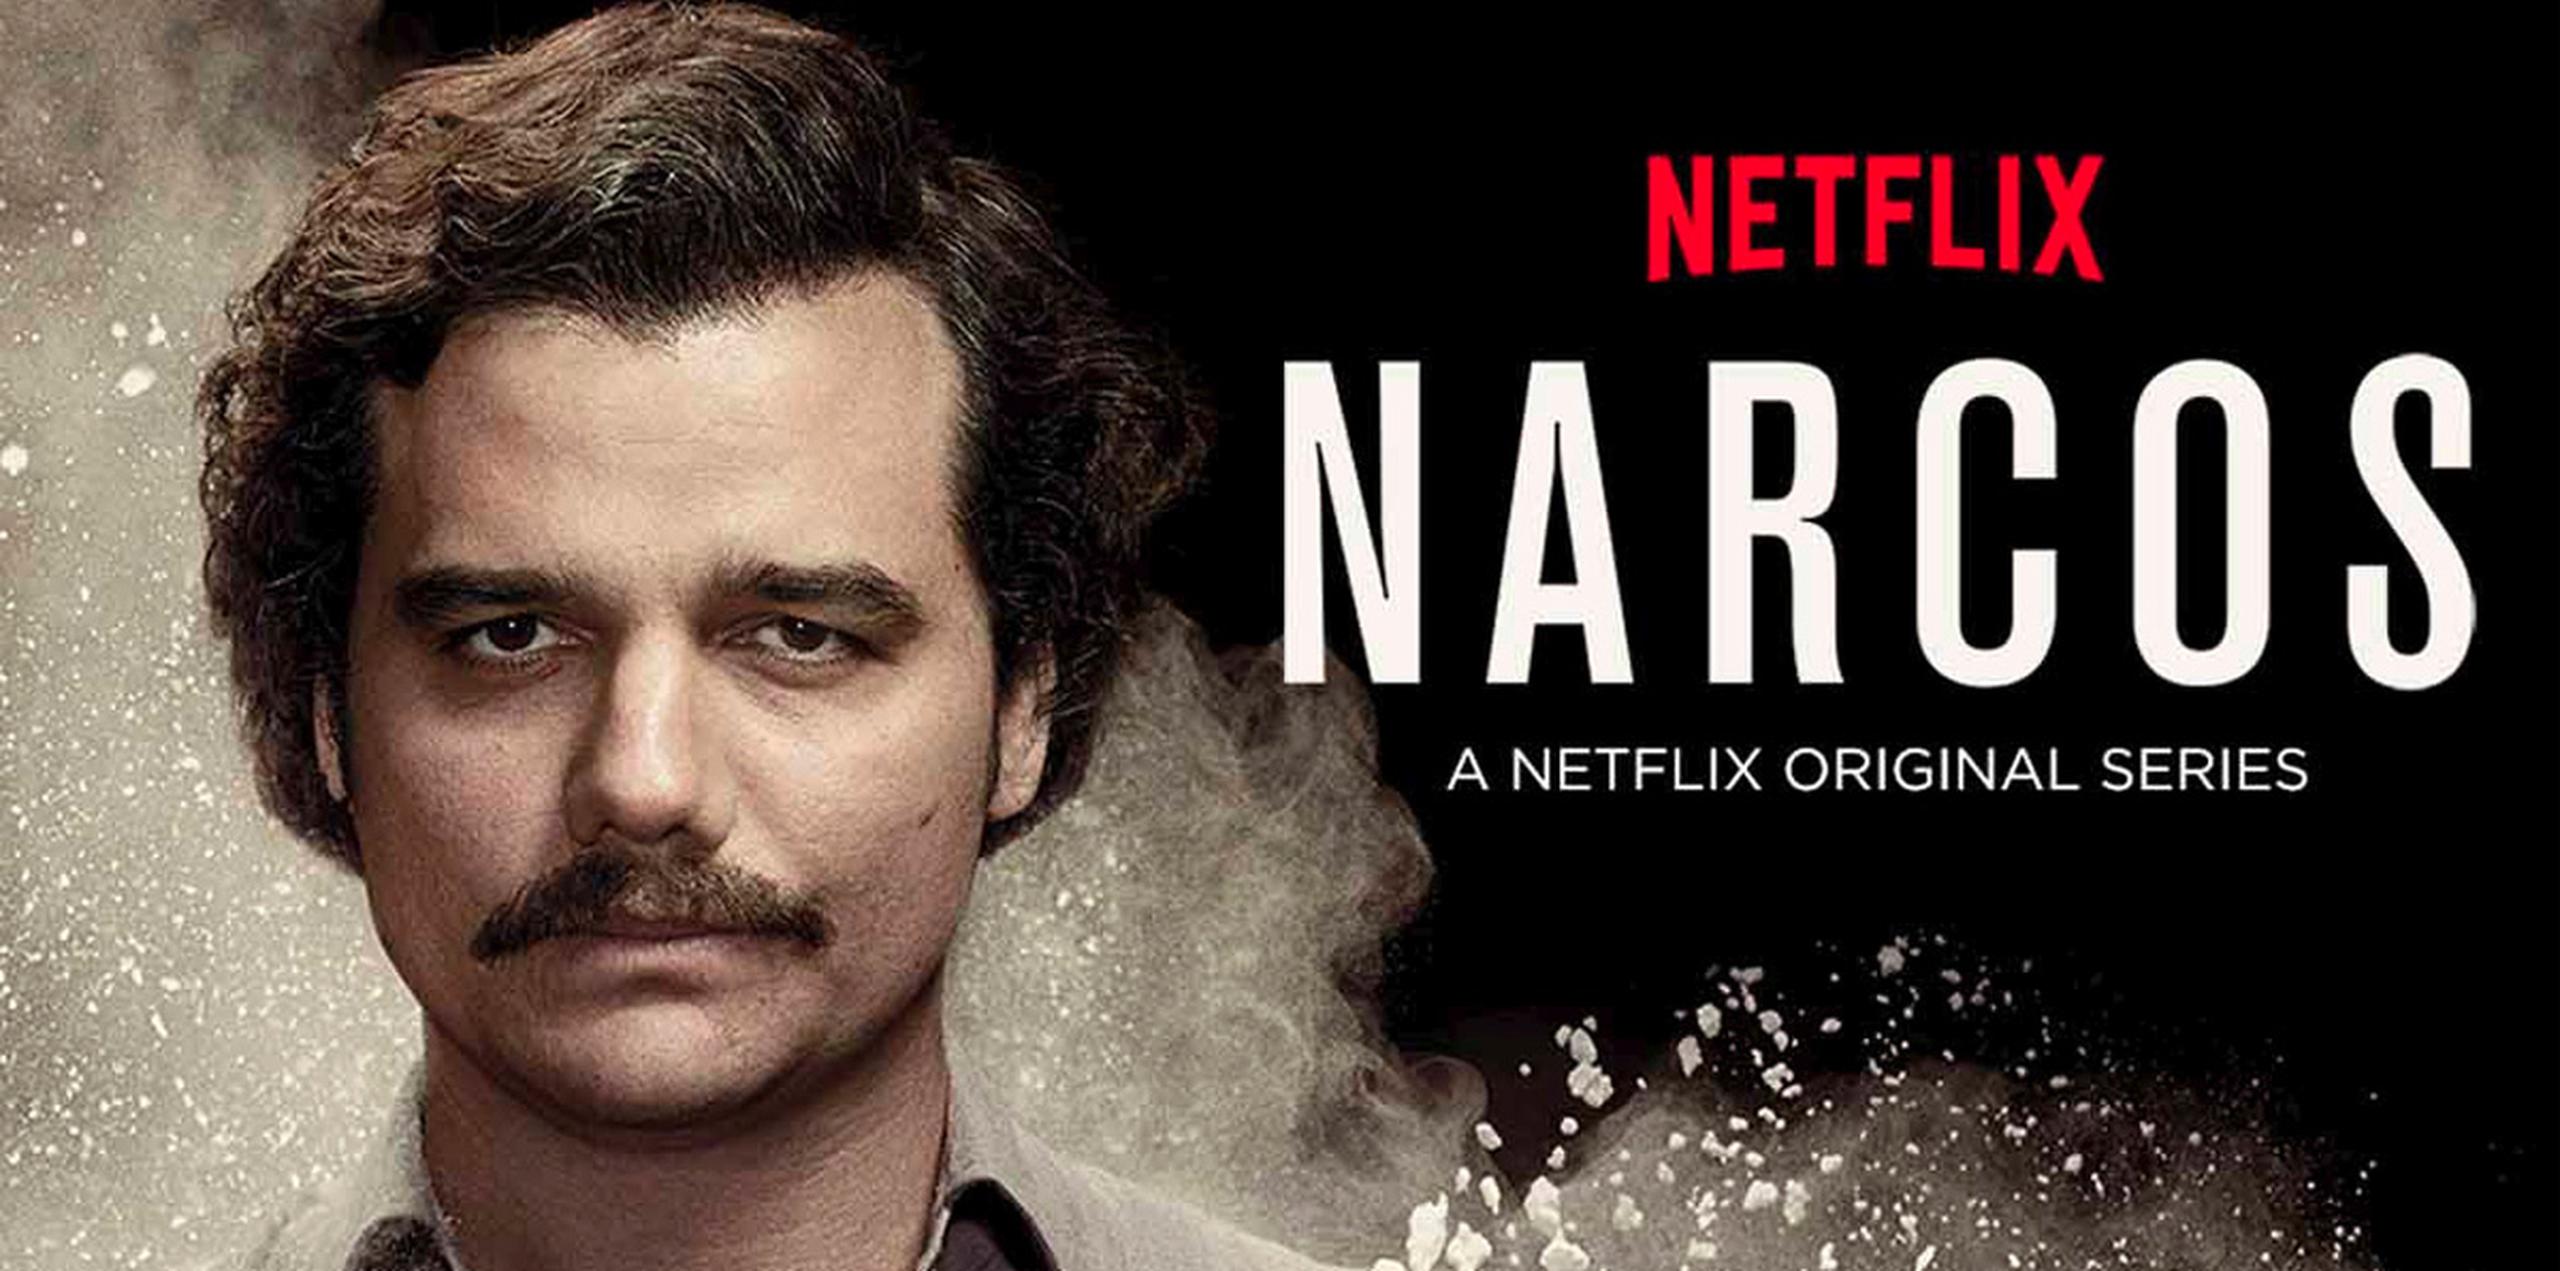 Todo apunta a que, después de la anunciada muerte de Escobar en la segunda temporada, "Narcos" continuará radiografiando el negocio de la droga en Colombia en sus nuevos episodios.